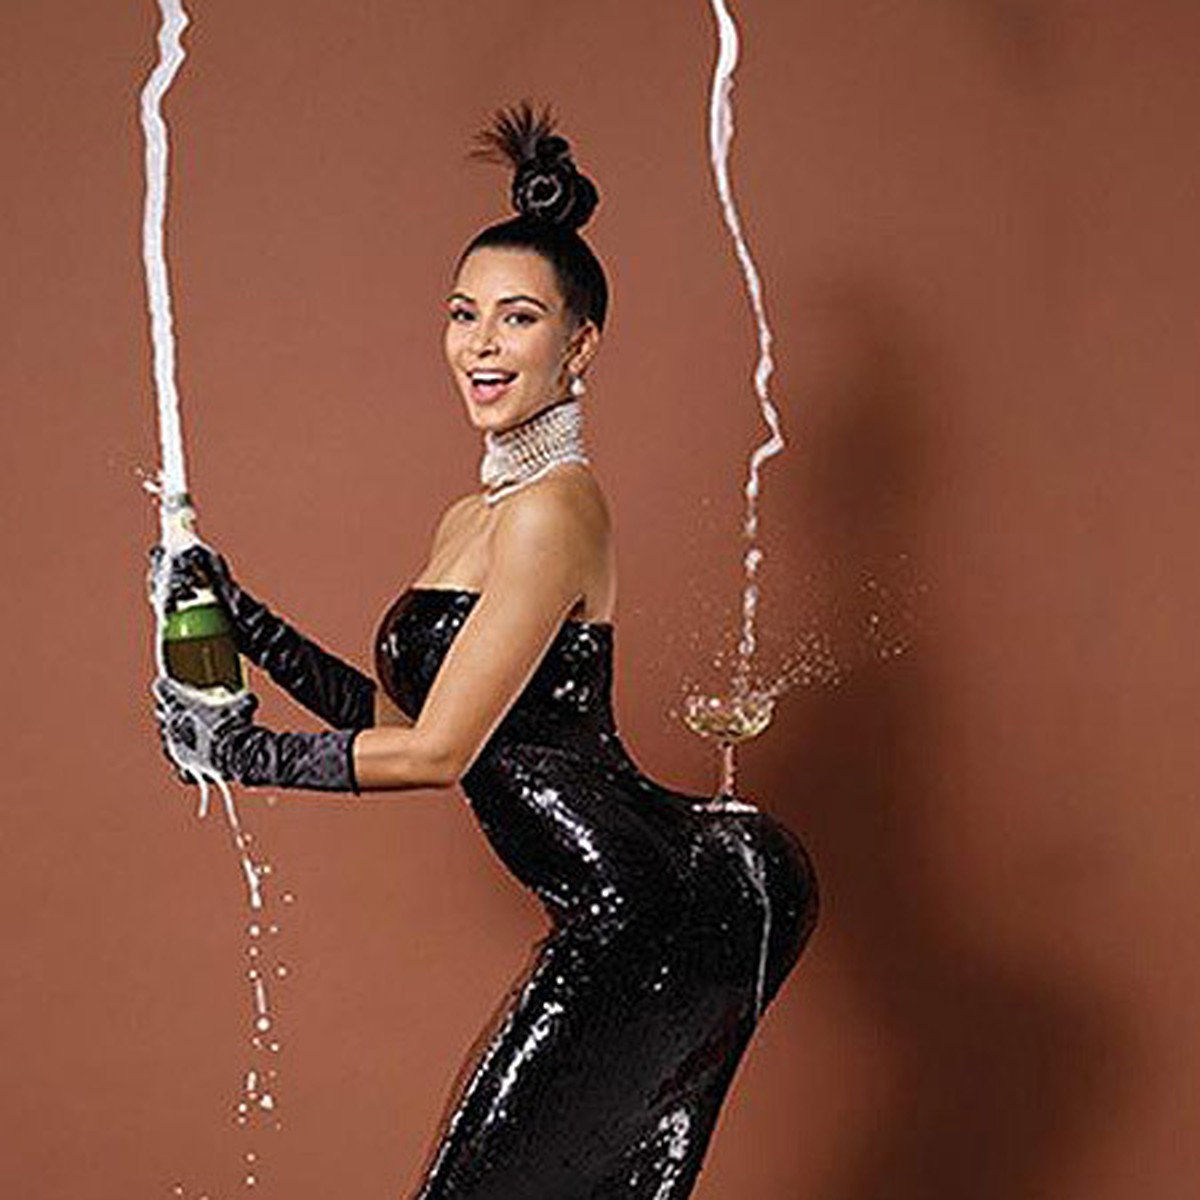 Ким Кардашьян горячие фото: в нижнем белье и купальнике, слив